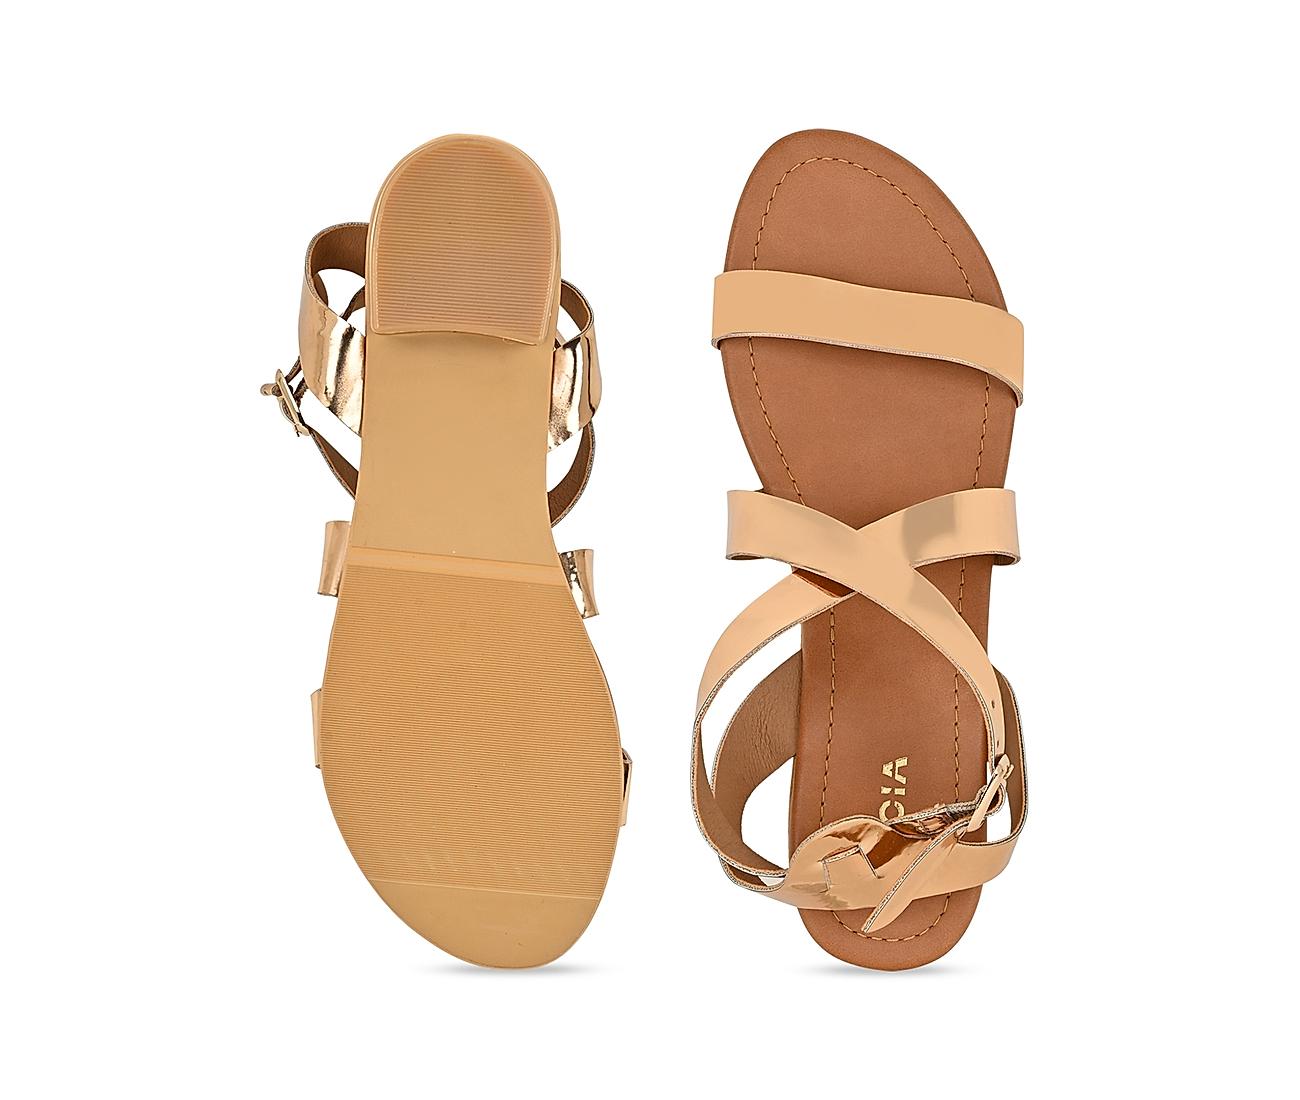 Funtasma Womens Gladiator Sandals Gold Shoes 3 12 Inch Heel India | Ubuy